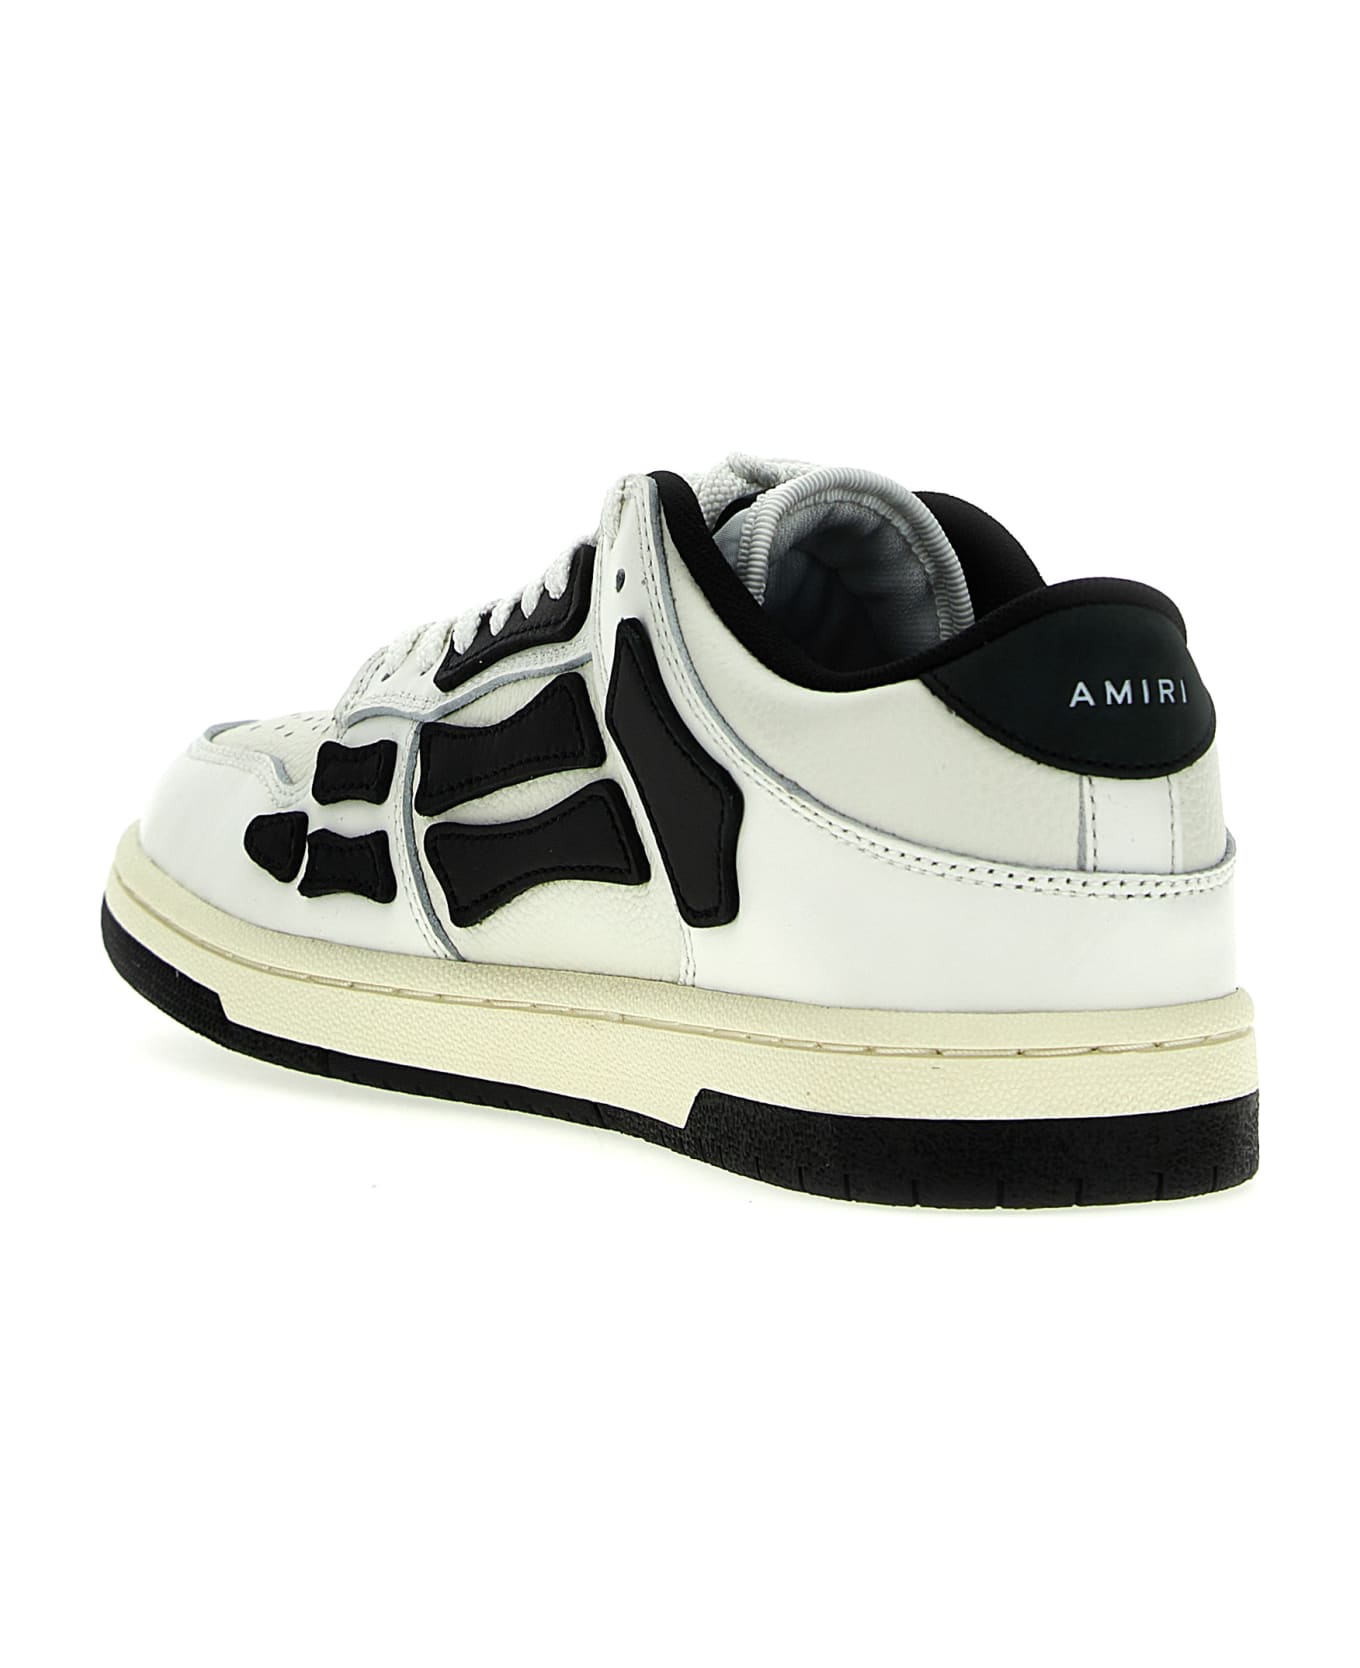 AMIRI 'skel Top Hi' Sneakers - White/Black